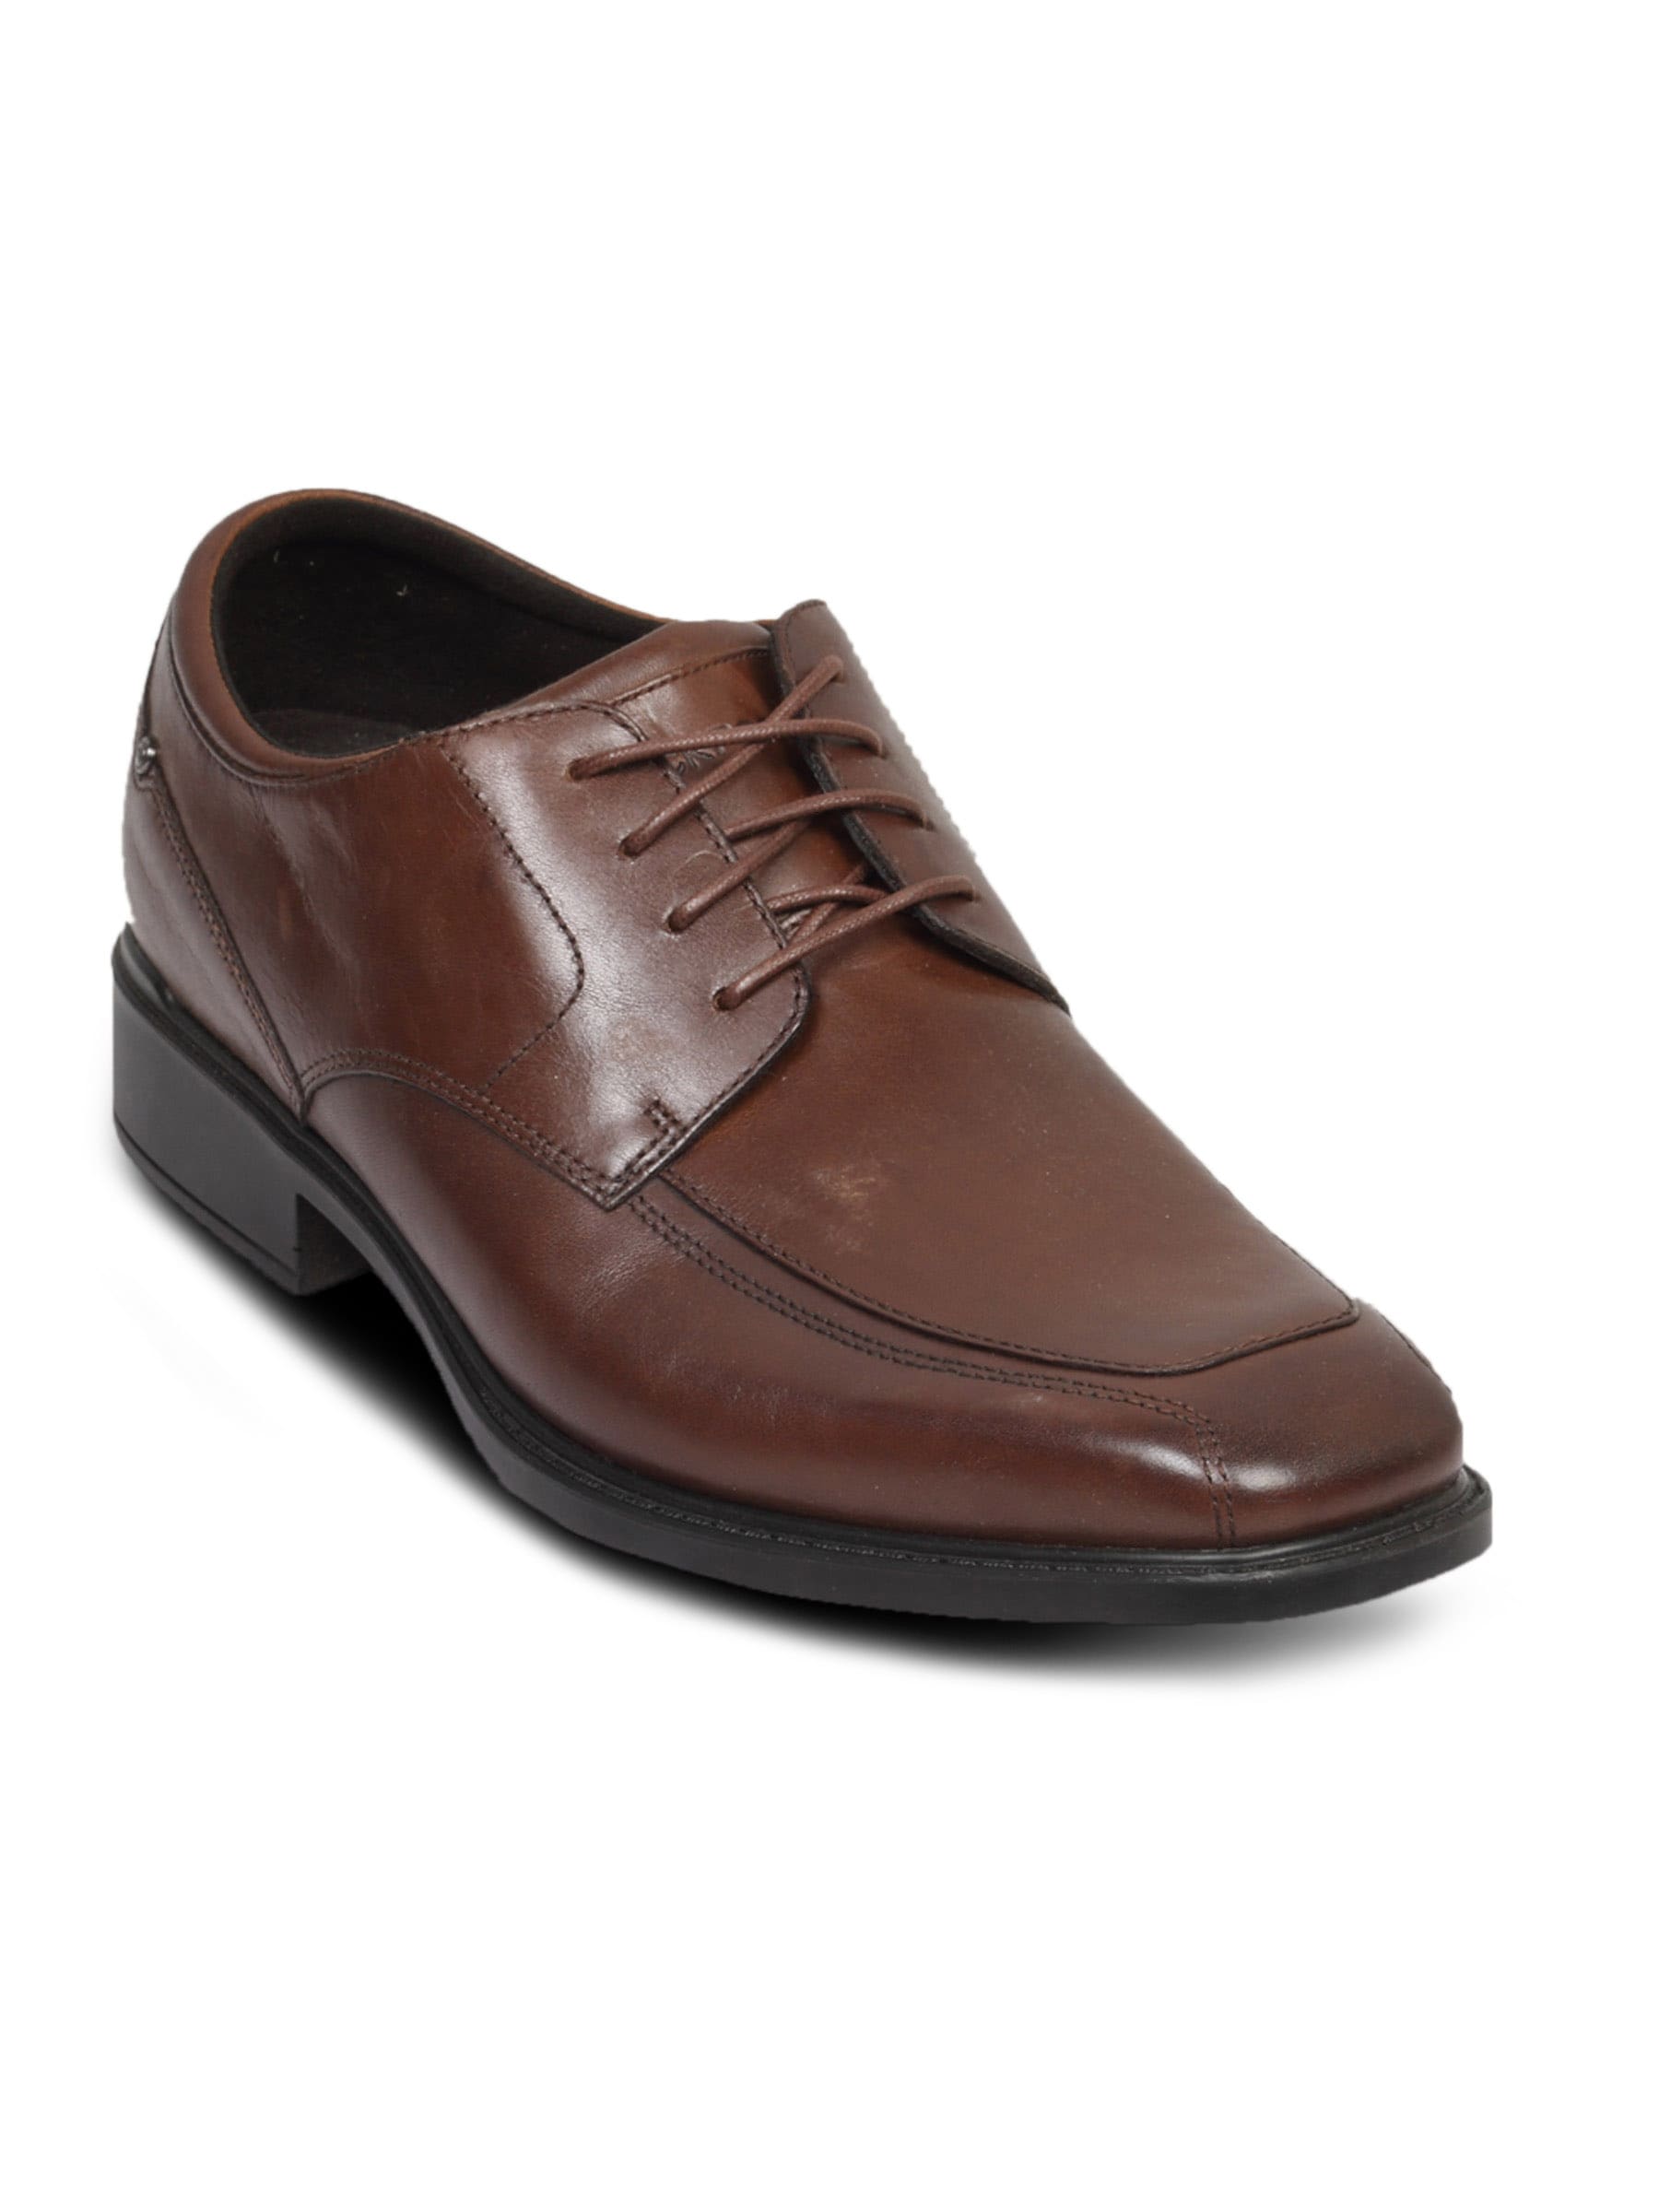 Rockport Men's Bvallee Brown Shoe